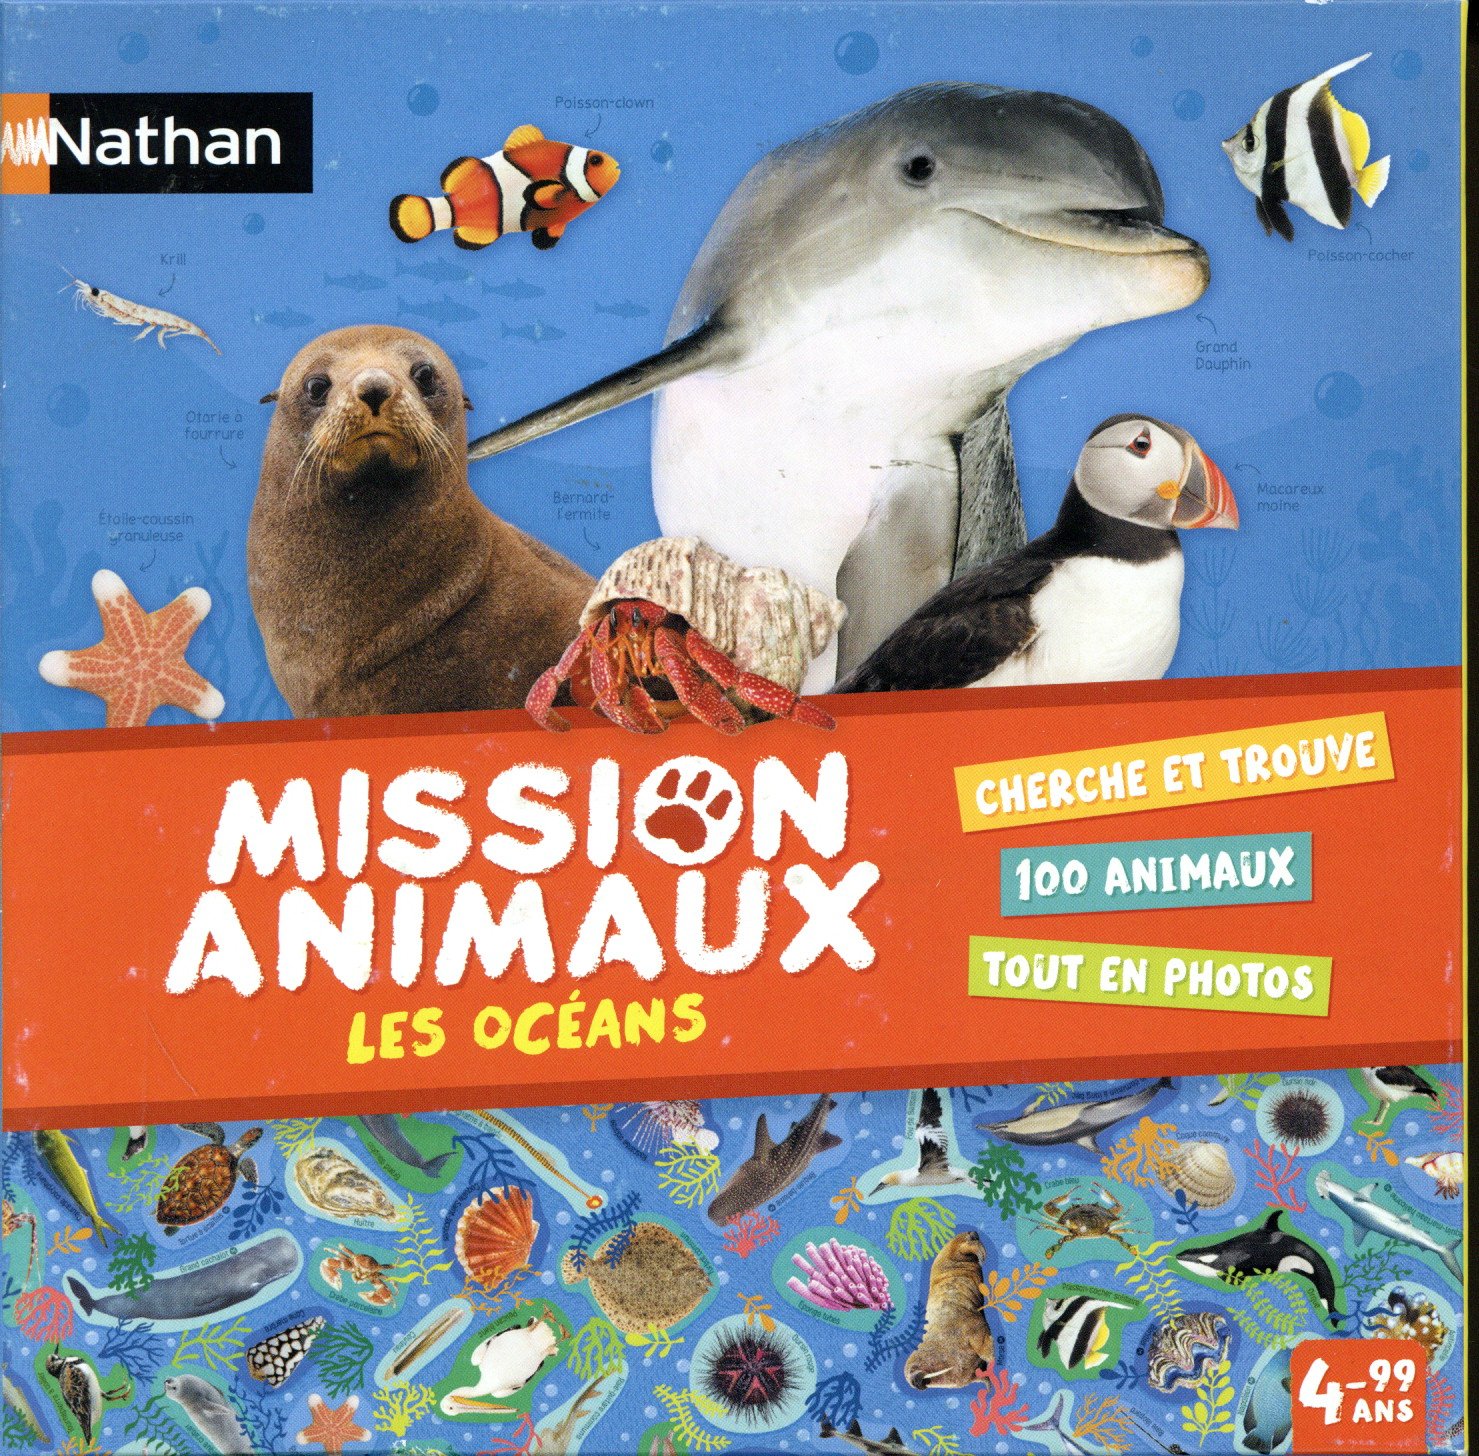 Mission Animaux: Les Océans